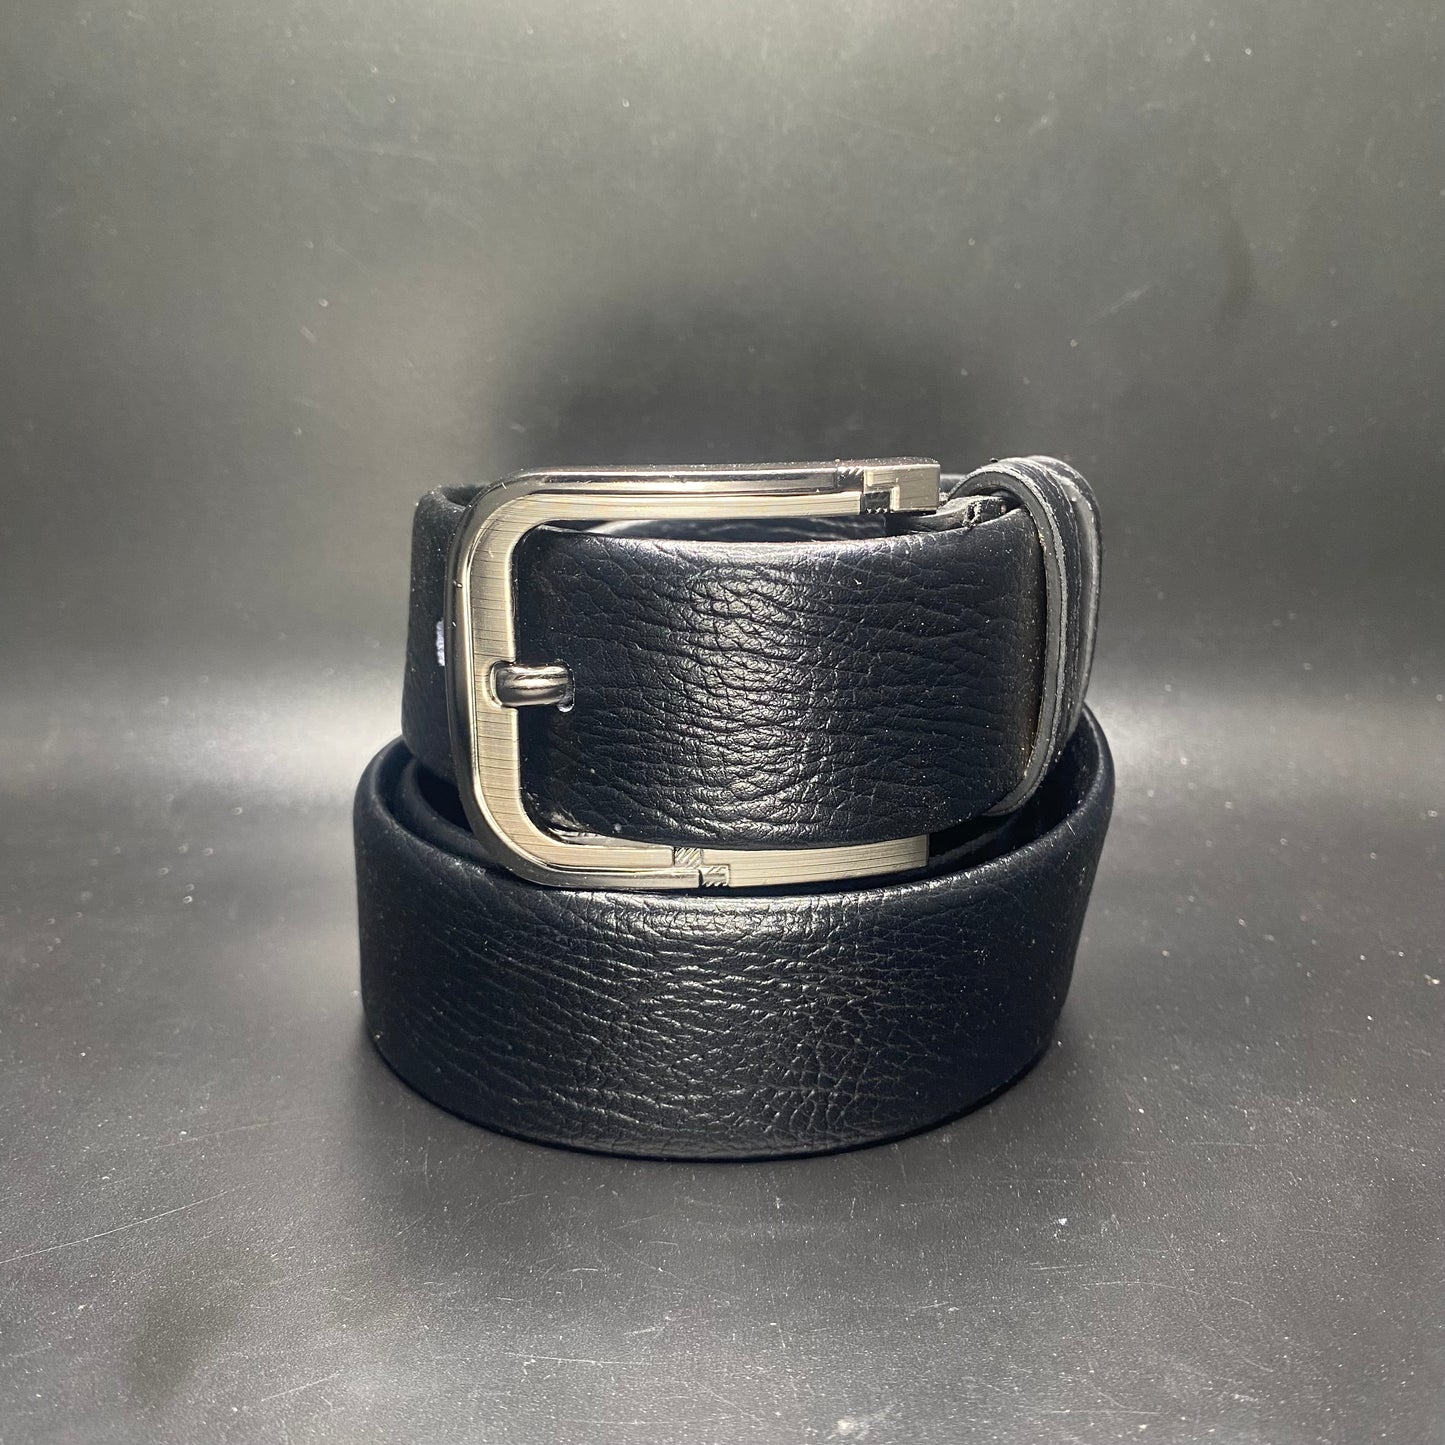 Normal belt fashion back sew